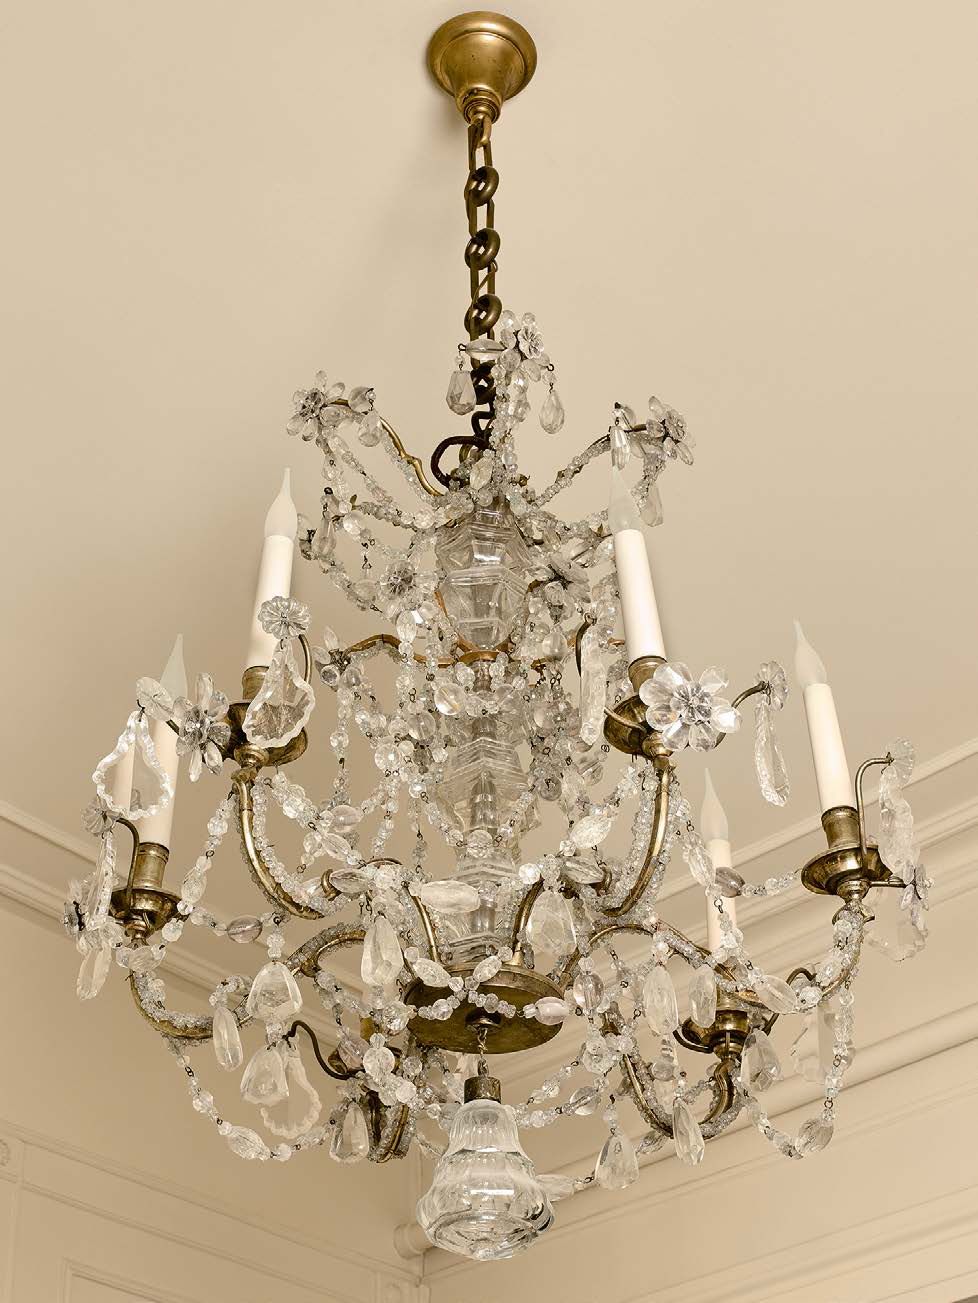 Null 青铜吊灯，有六个灯，装饰有一串切面玻璃珠和吊坠、水晶、岩石水晶和玻璃。
部分为18世纪。
高度：70厘米
直径：60厘米